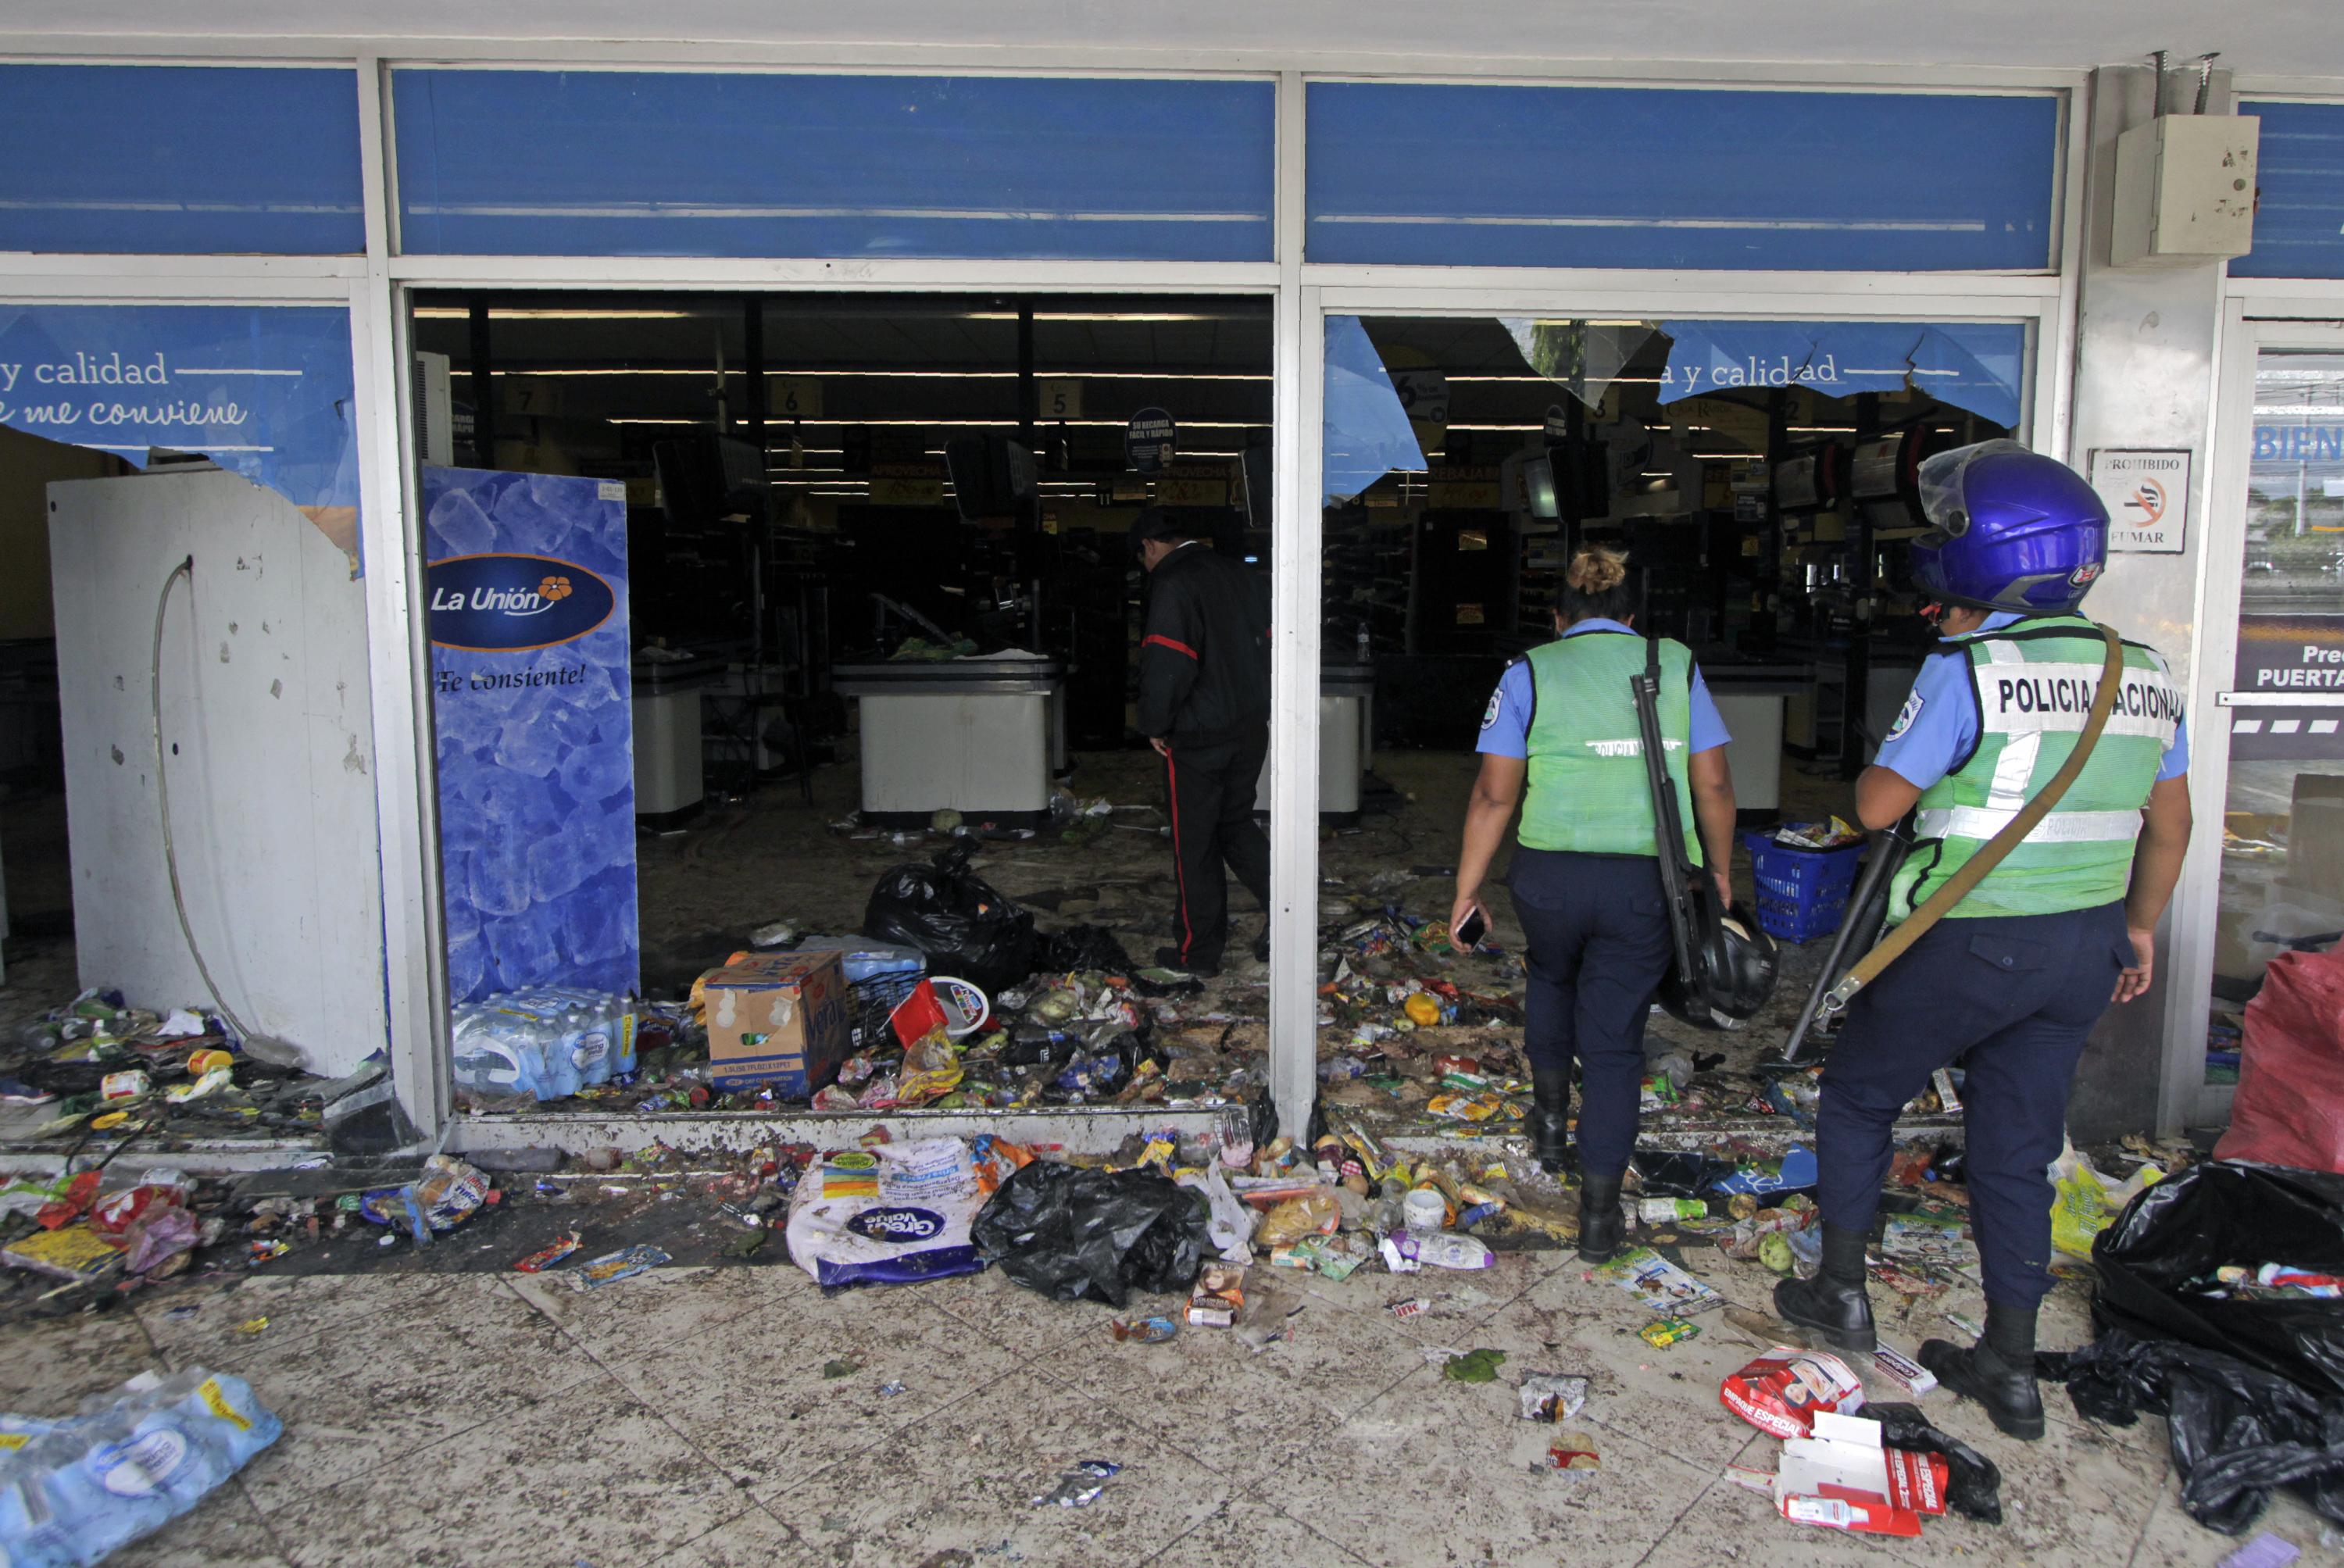 Policías ingresan a un supermercado después de ser saqueado durante las protestas contra las reformas al Instituto de Seguridad Social (INSS) en Managua el 22 de abril de 2018. El presidente de Nicaragua, Daniel Ortega, anunció el domingo desechar la reforma. / AFP PHOTO / INTI OCON